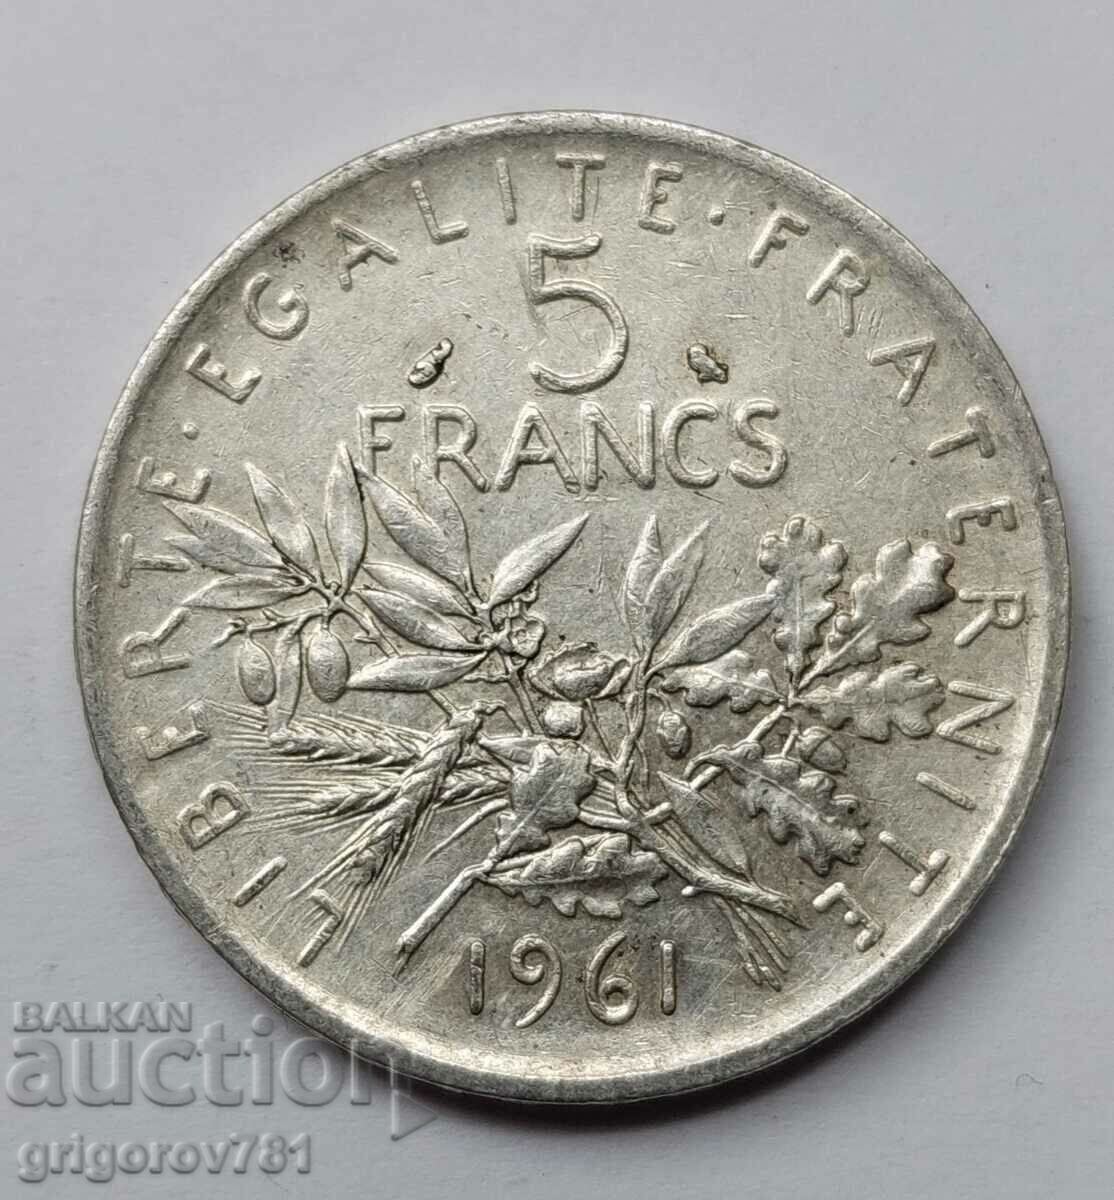 5 Φράγκα Ασήμι Γαλλία 1961 - Ασημένιο νόμισμα #1